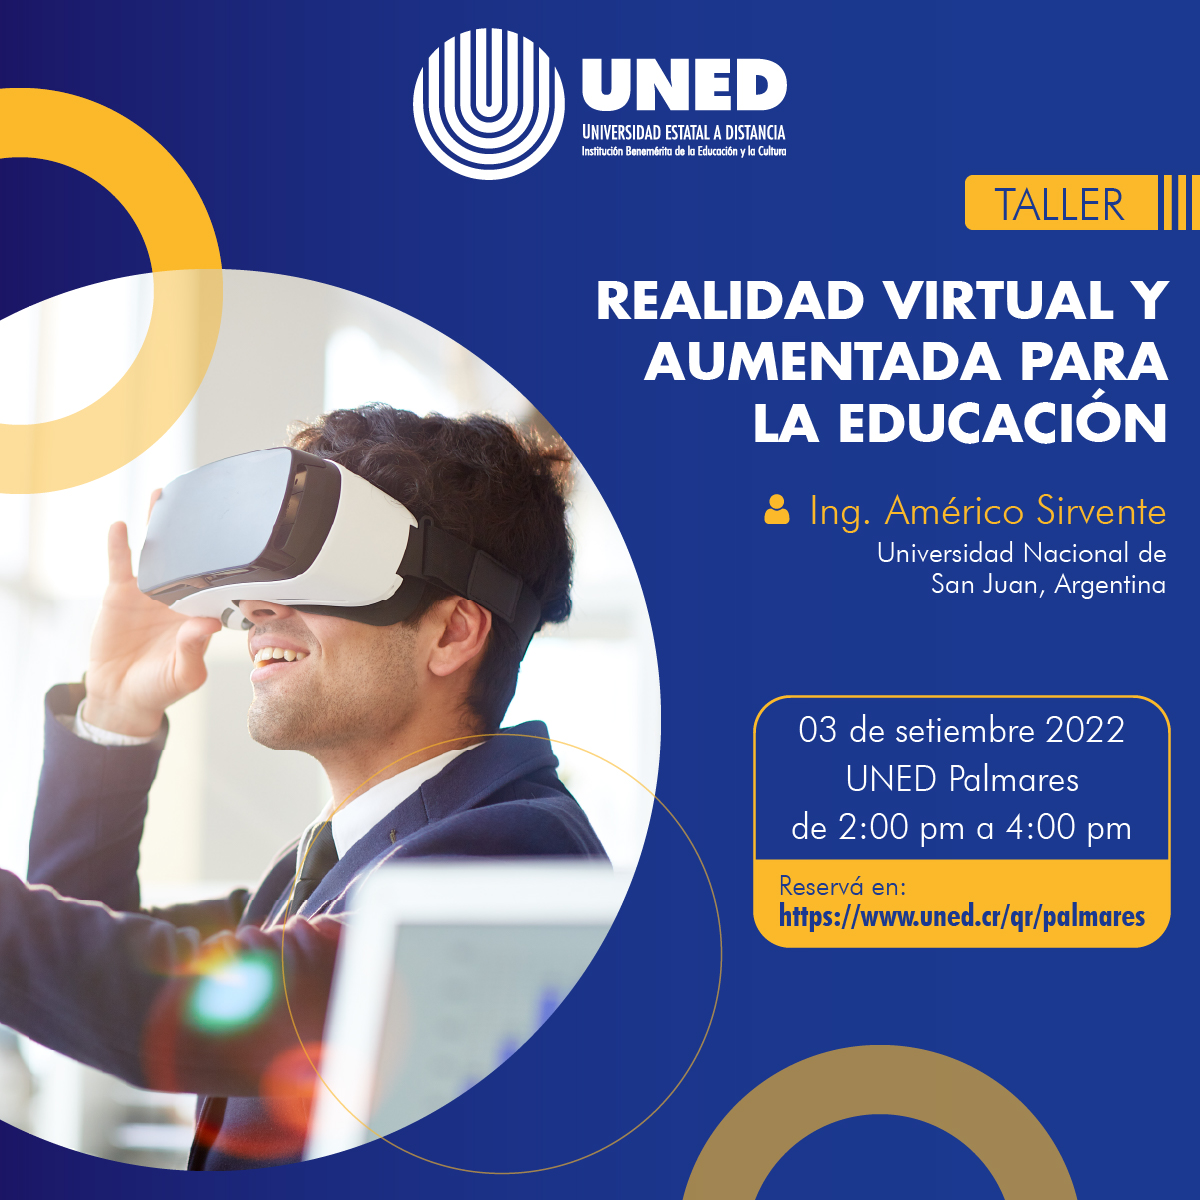 Realidad virtual y aumentada para la educación